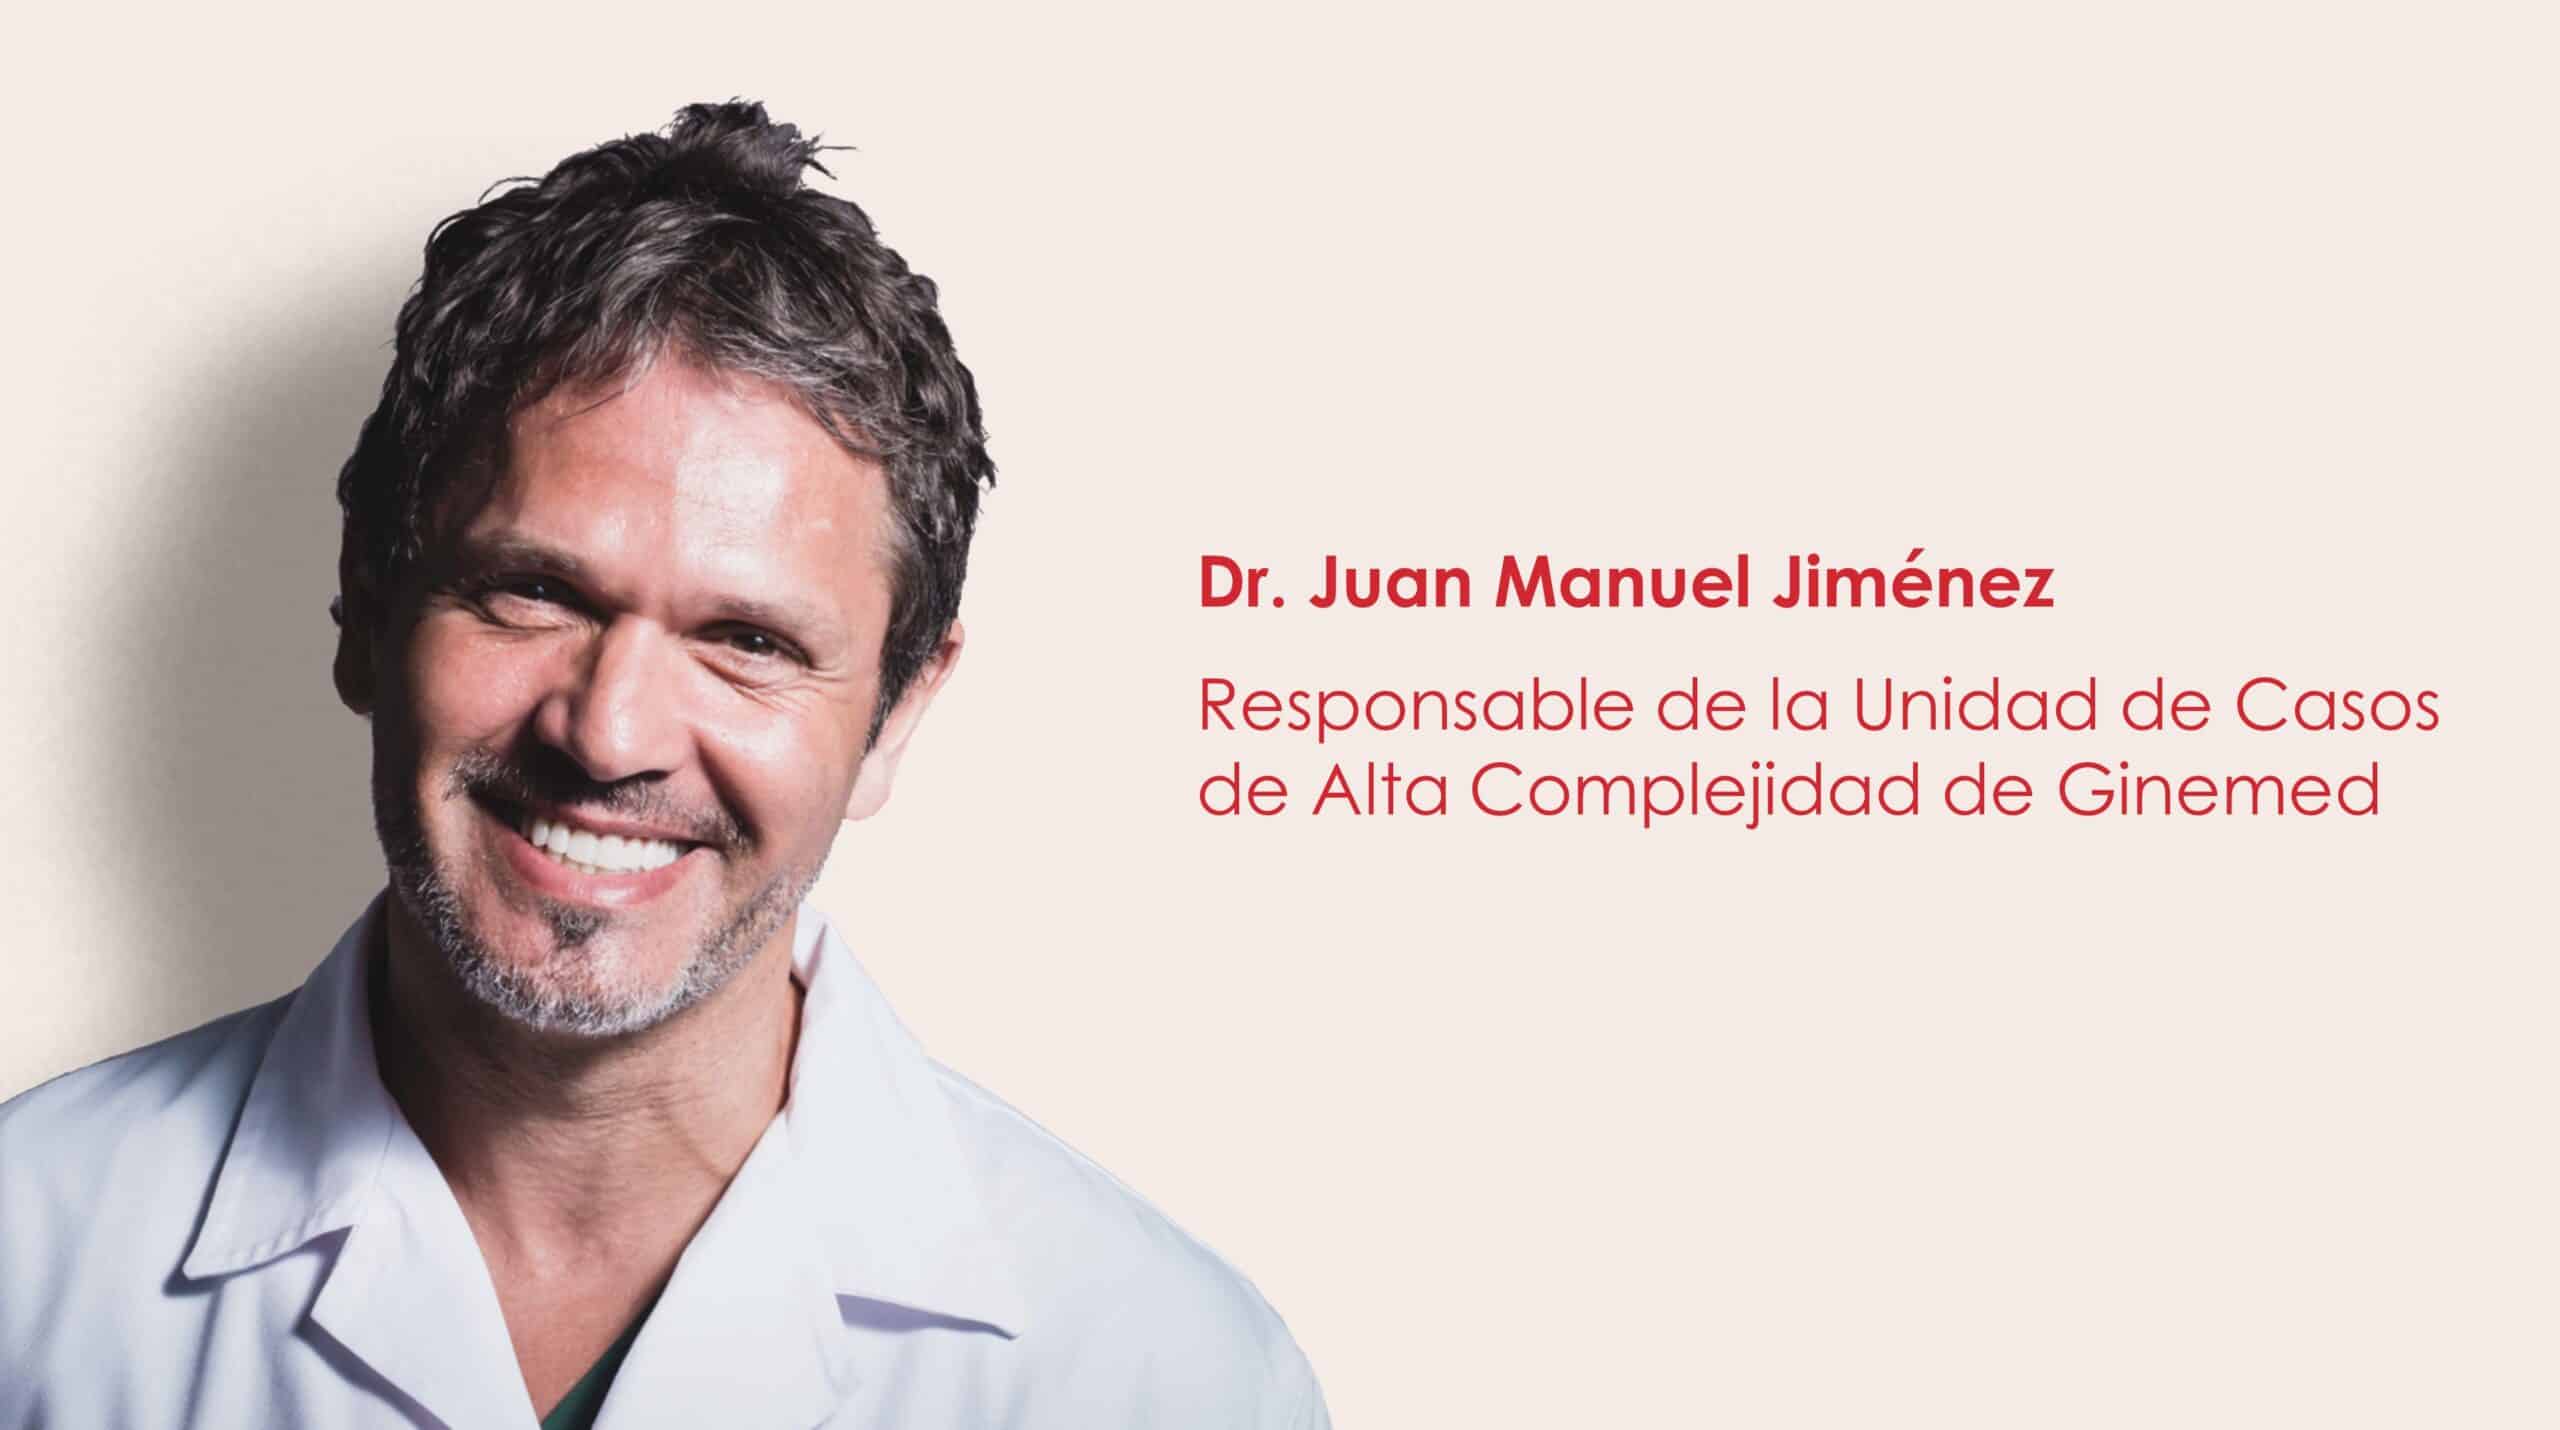 Dr. Juan Manuel Jiménez, responsable de la Unidad de Casos de Alta Complejidad de Ginemed